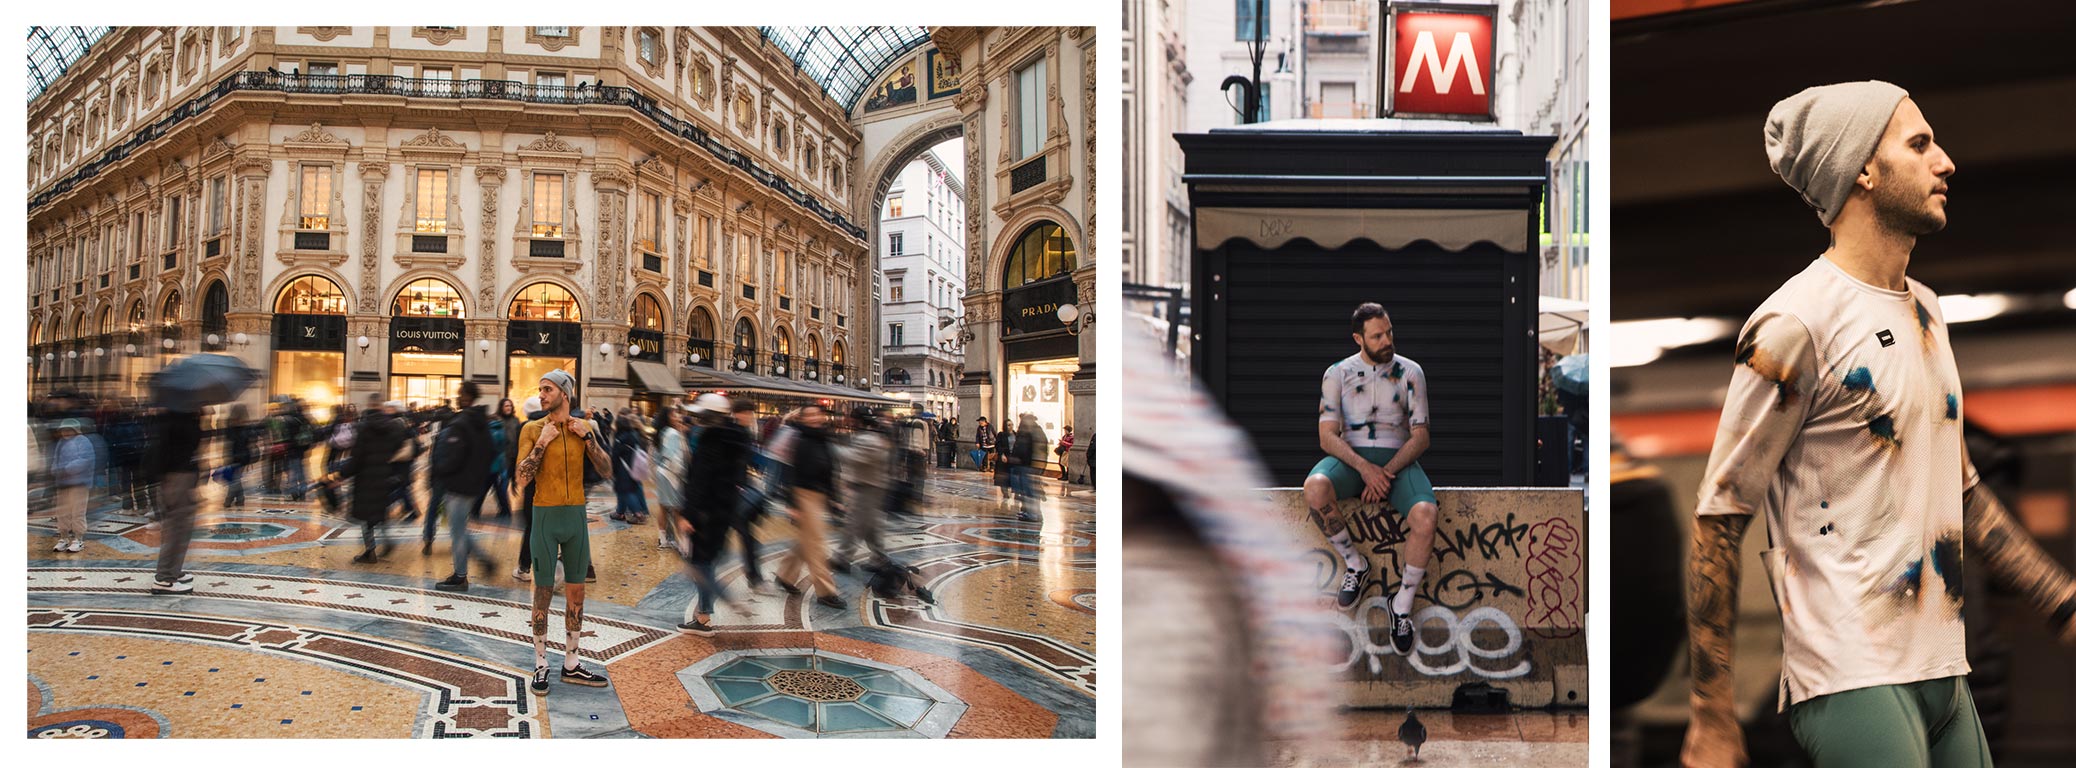 Composición de algunos momentos de la acción "walking" en los lugares más emblemáticos de Milán